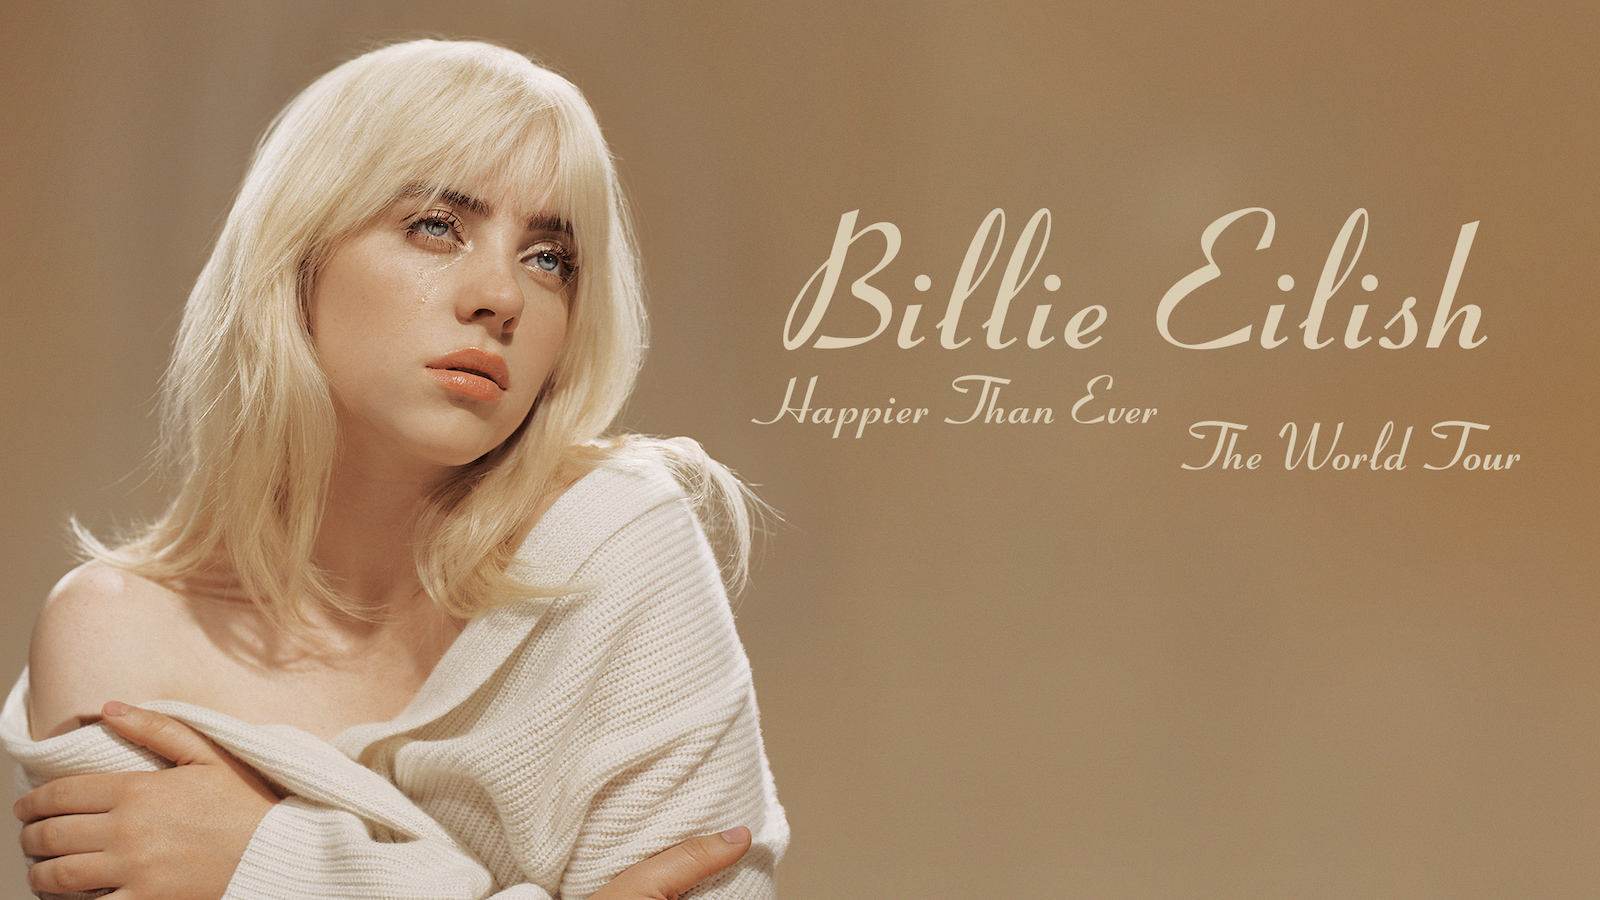 Live Preview: Billie Eilish 'Happier Than Ever' Tour Dates Announced